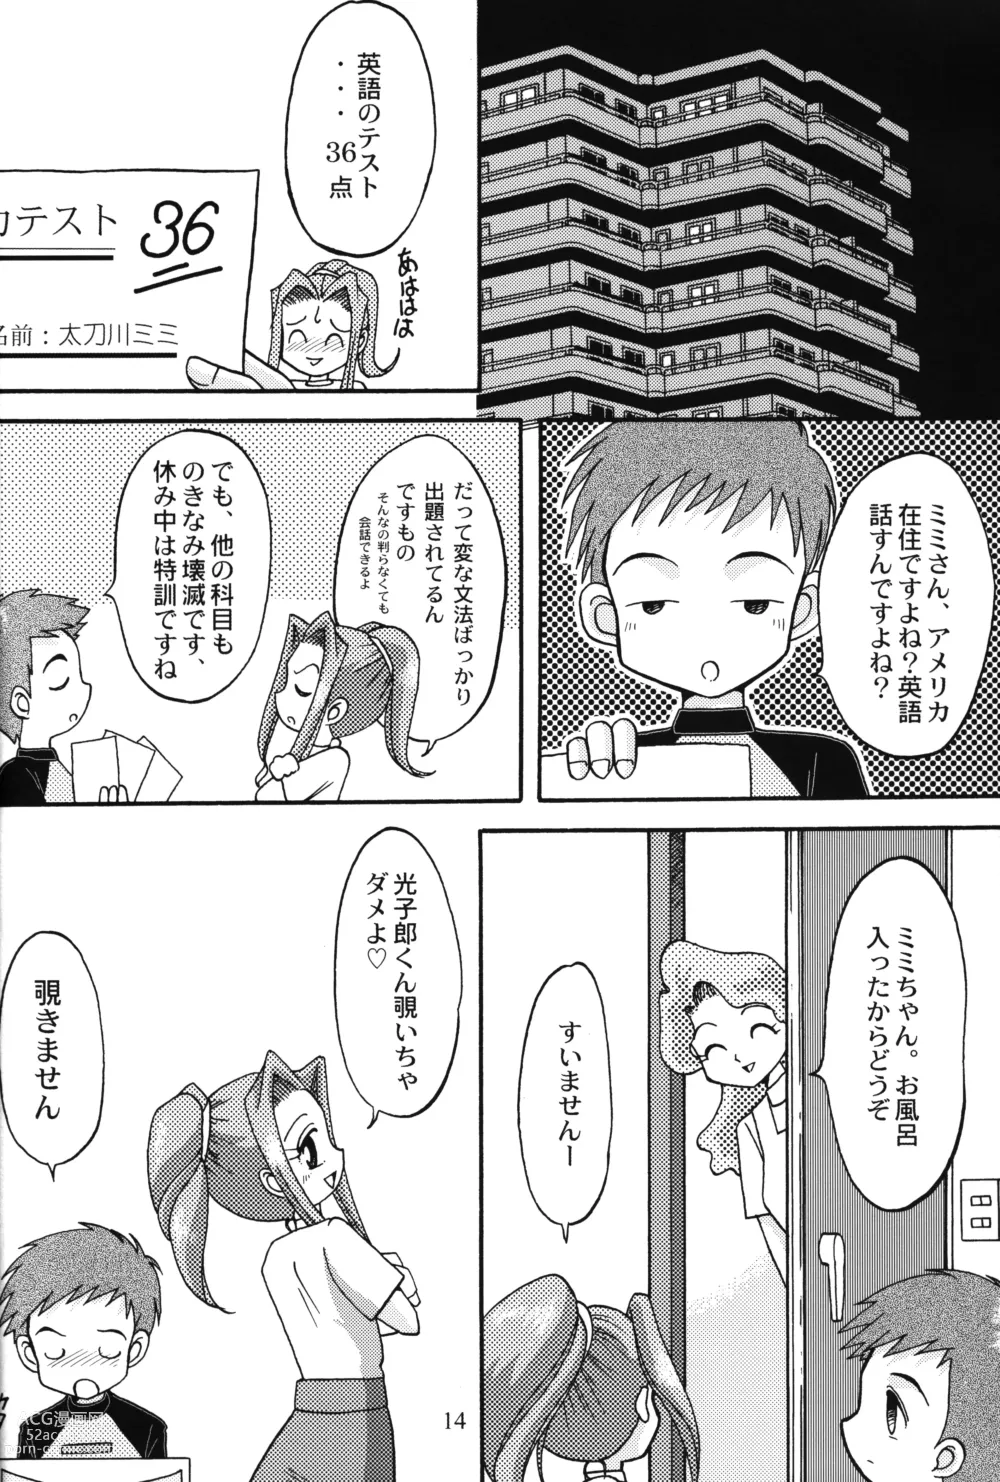 Page 13 of doujinshi Sora Mimi Hour 4